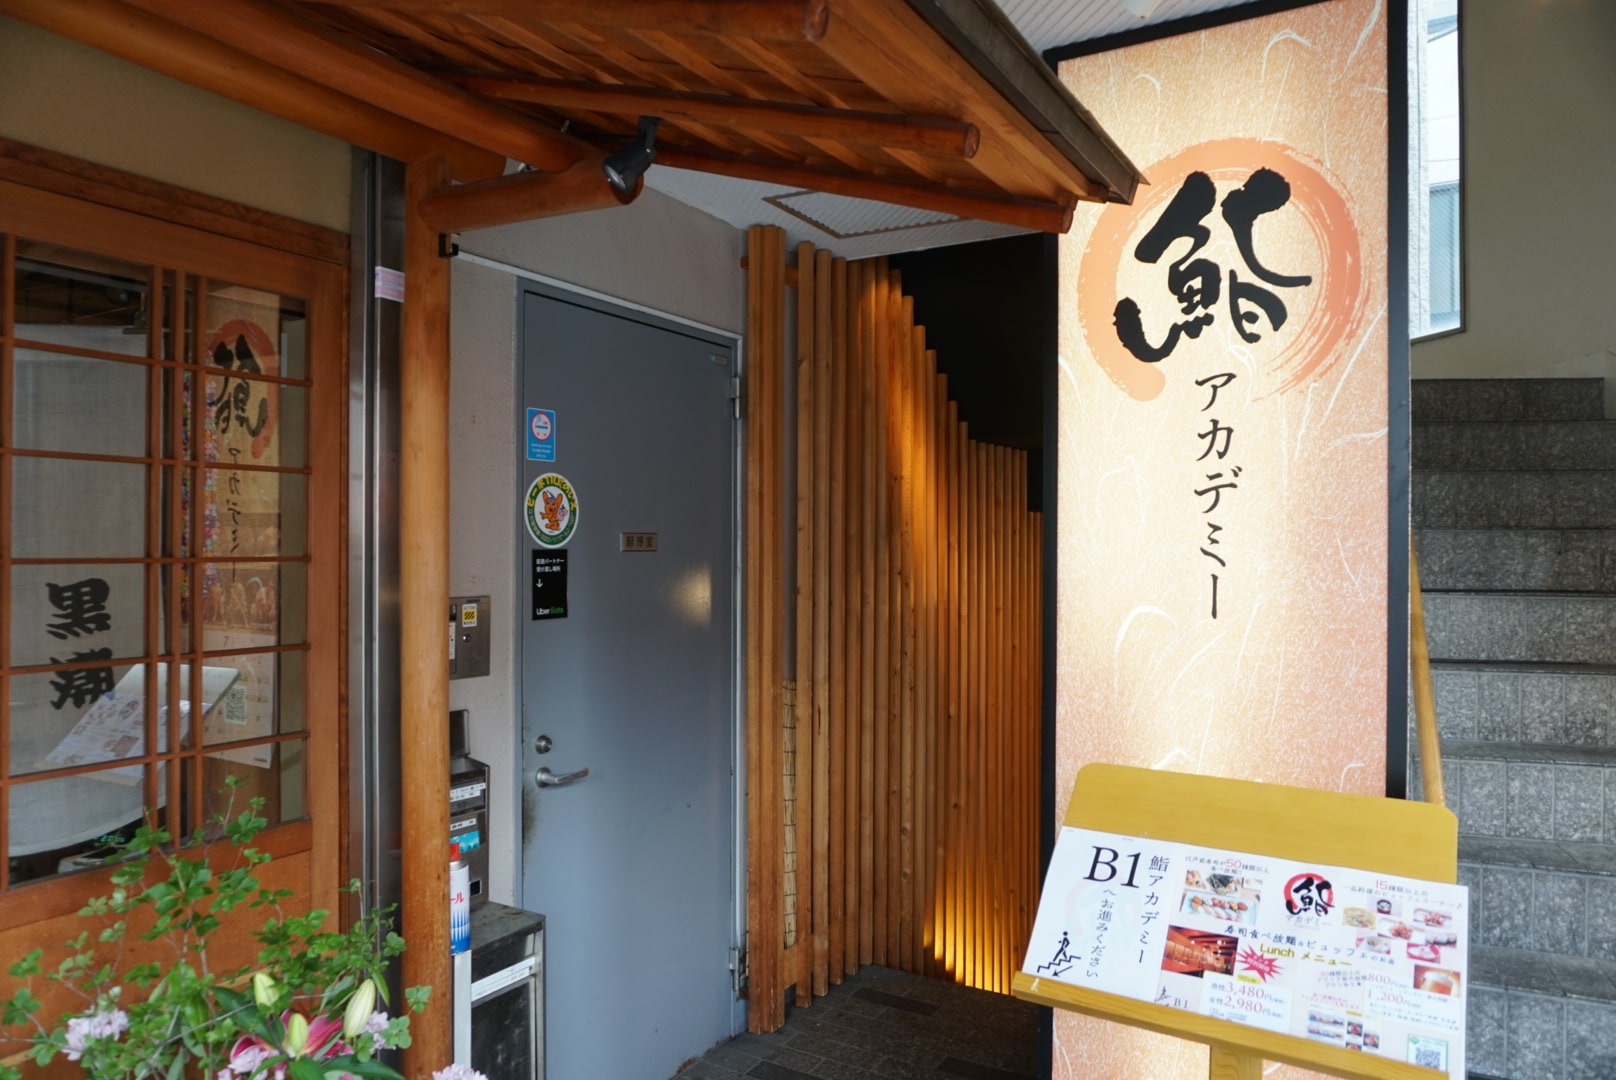 Kagurazaka Sushi Academy